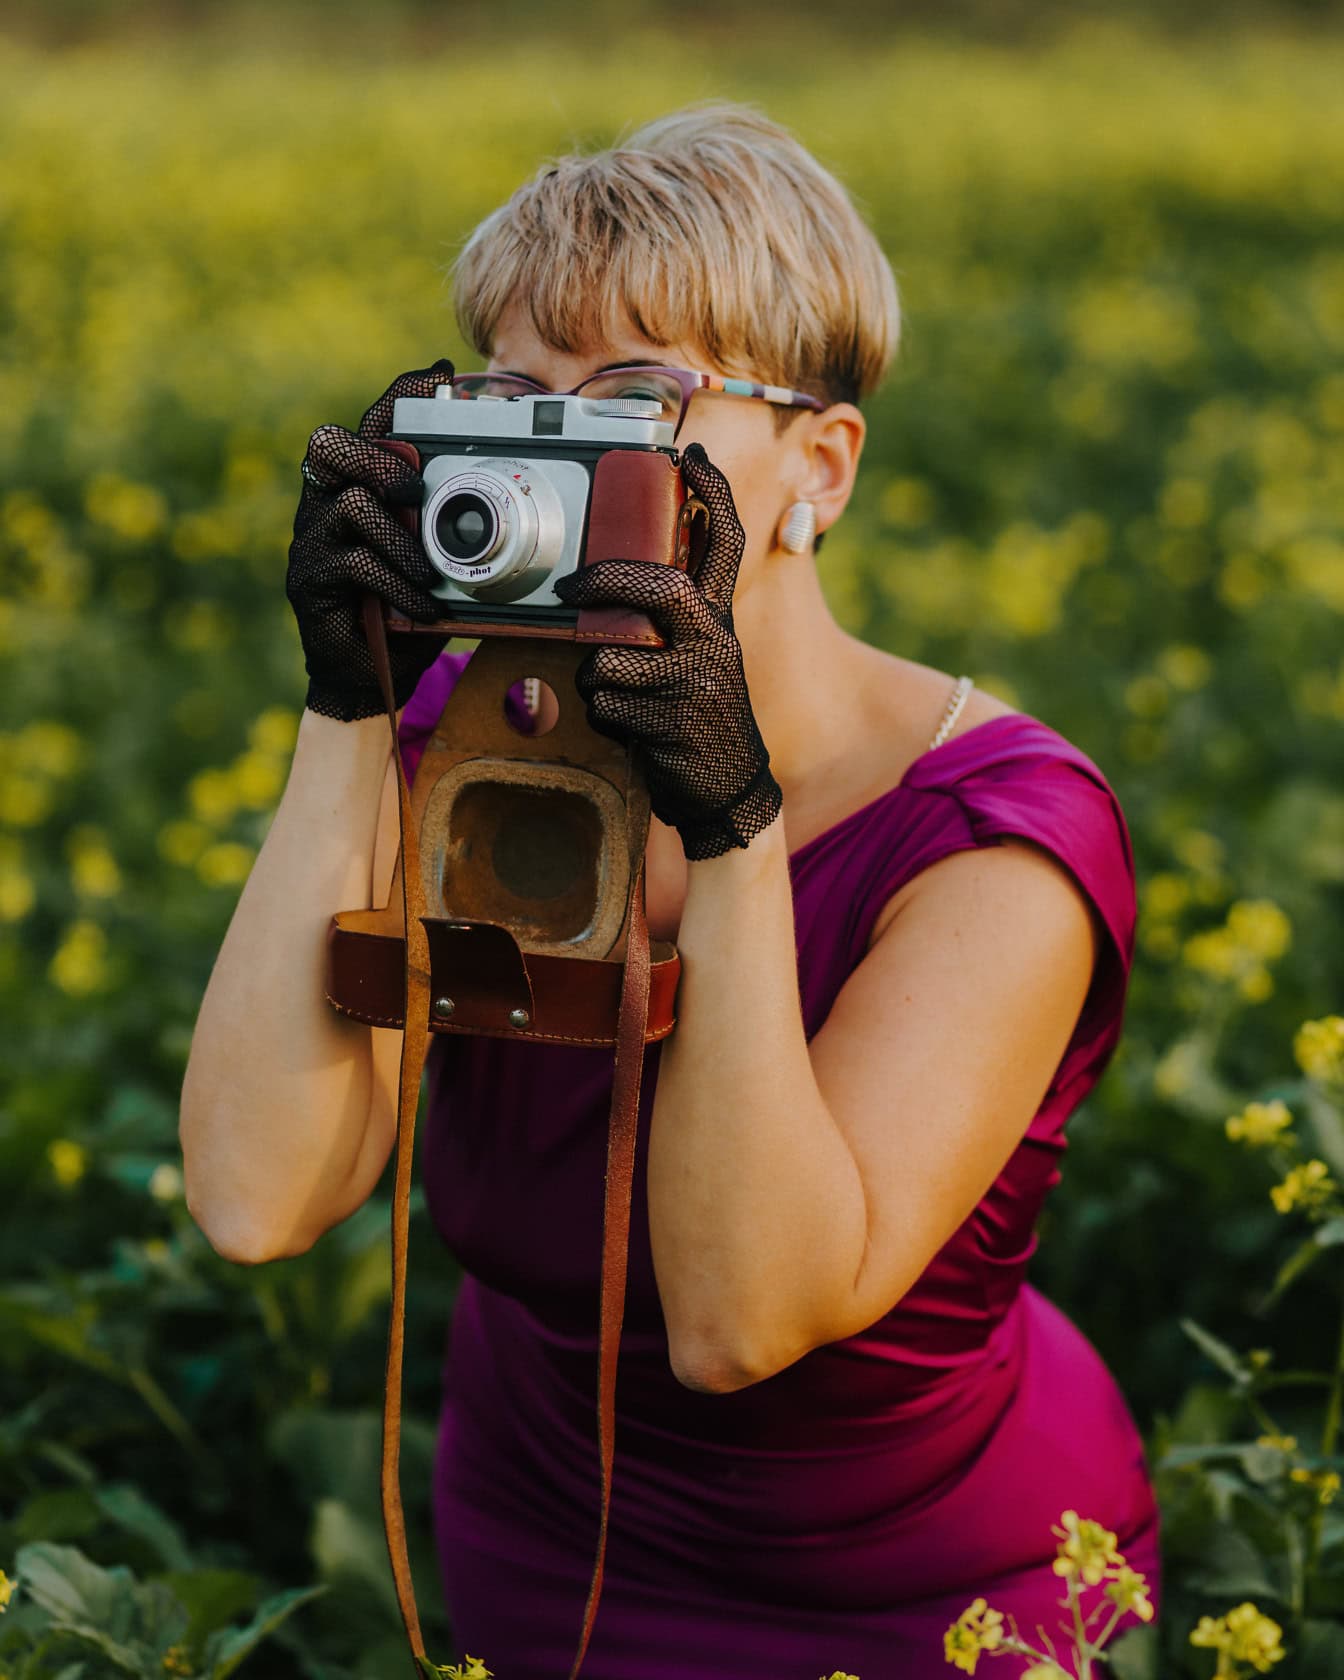 Okouzlující fotografka s krátkým blond účesem ve fialových šatech při fotografování analogovým fotoaparátem